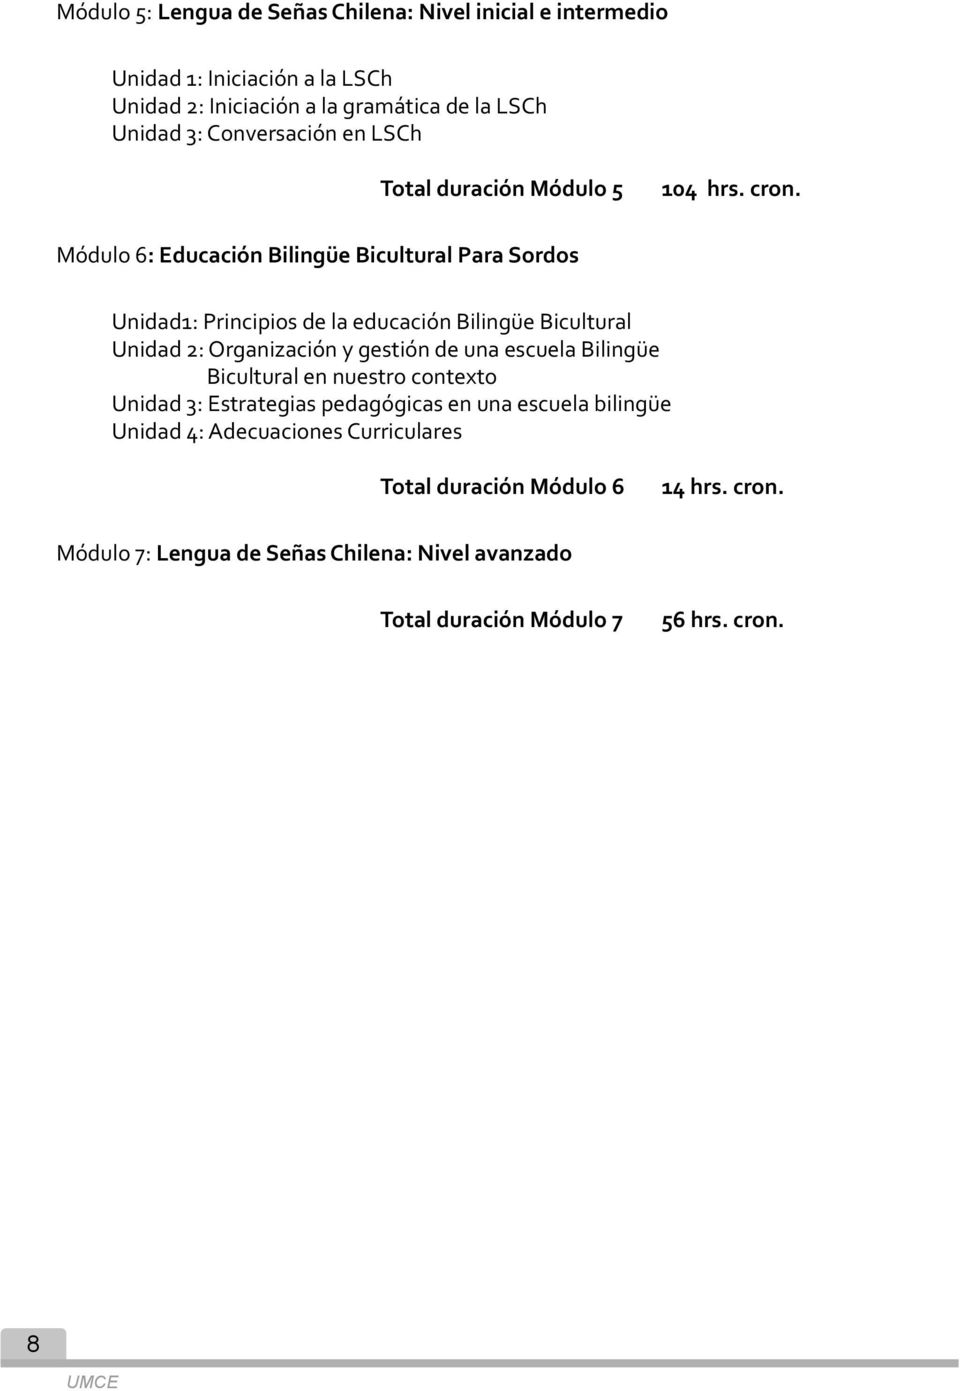 Módulo 6: Educación Bilingüe Bicultural Para Sordos Unidad1: Principios de la educación Bilingüe Bicultural Unidad 2: Organización y gestión de una escuela